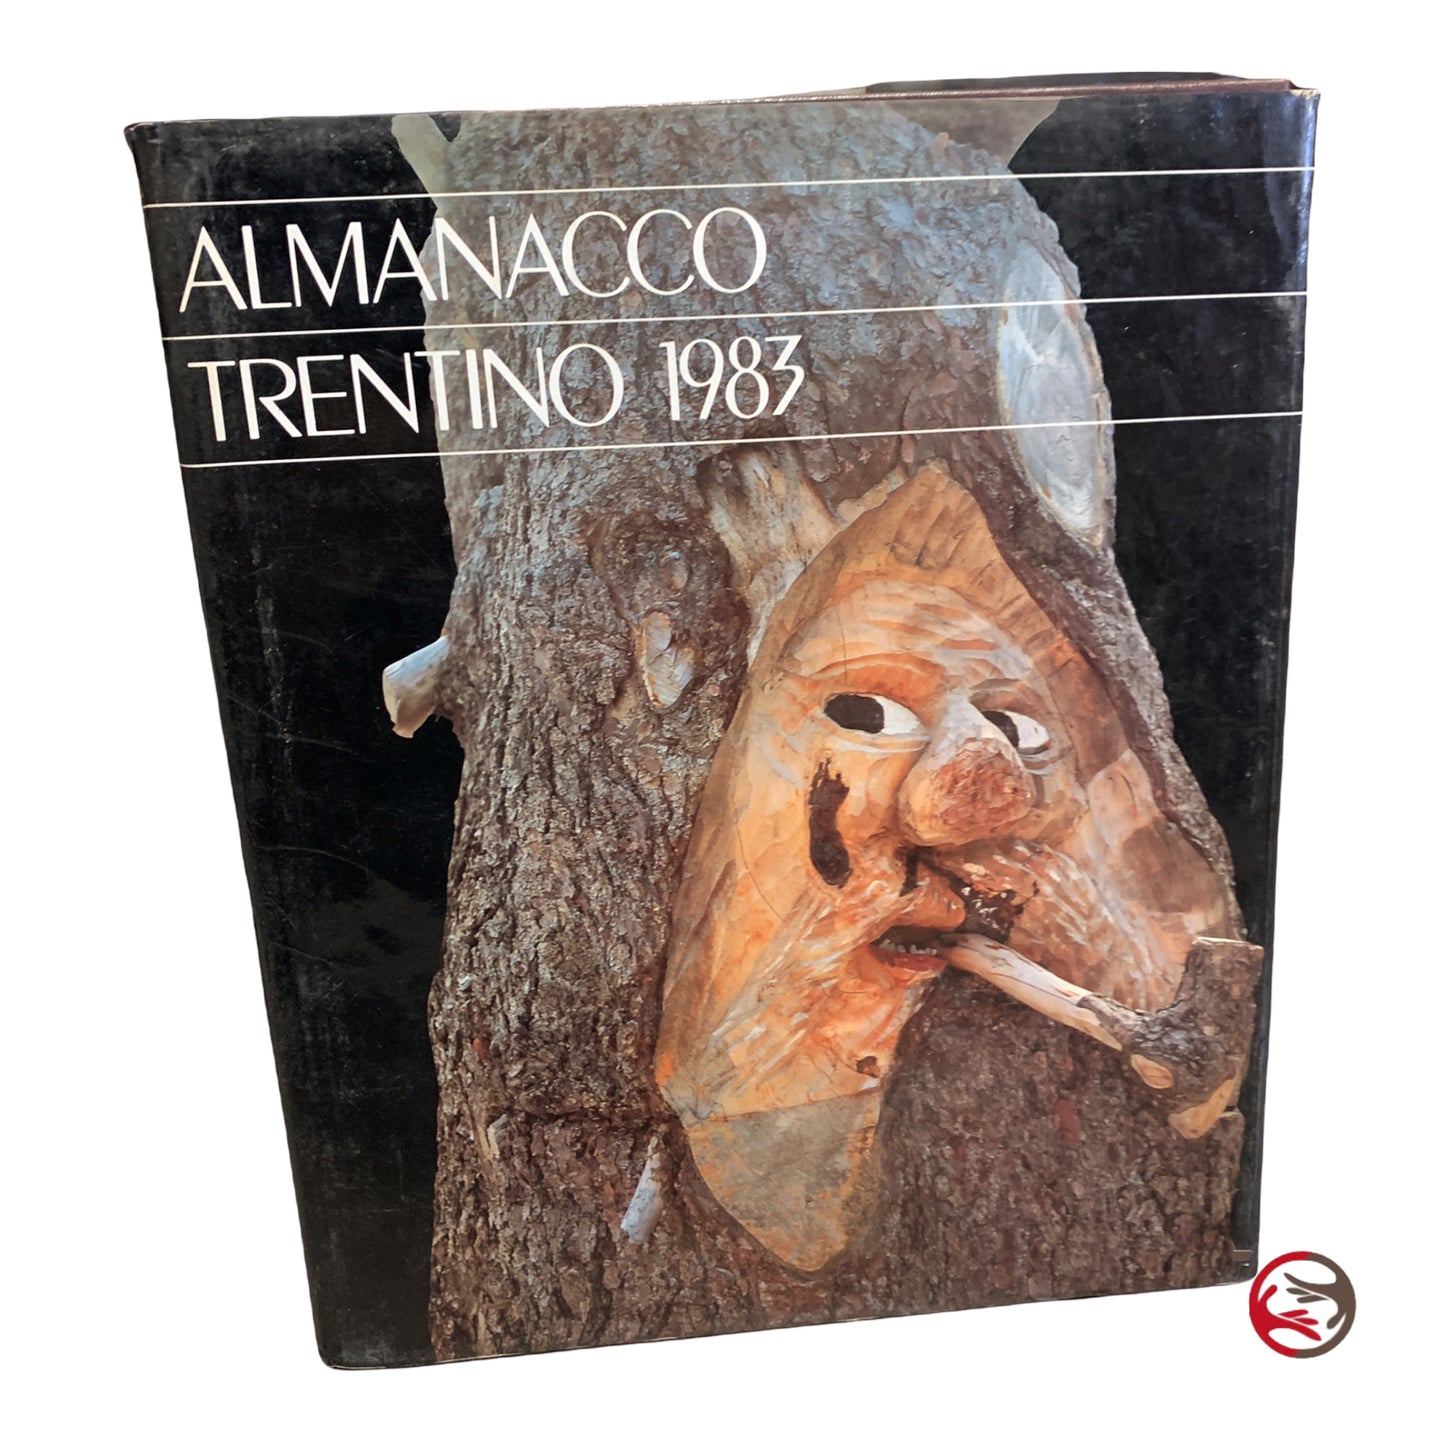 Almanacco Trentino 1983